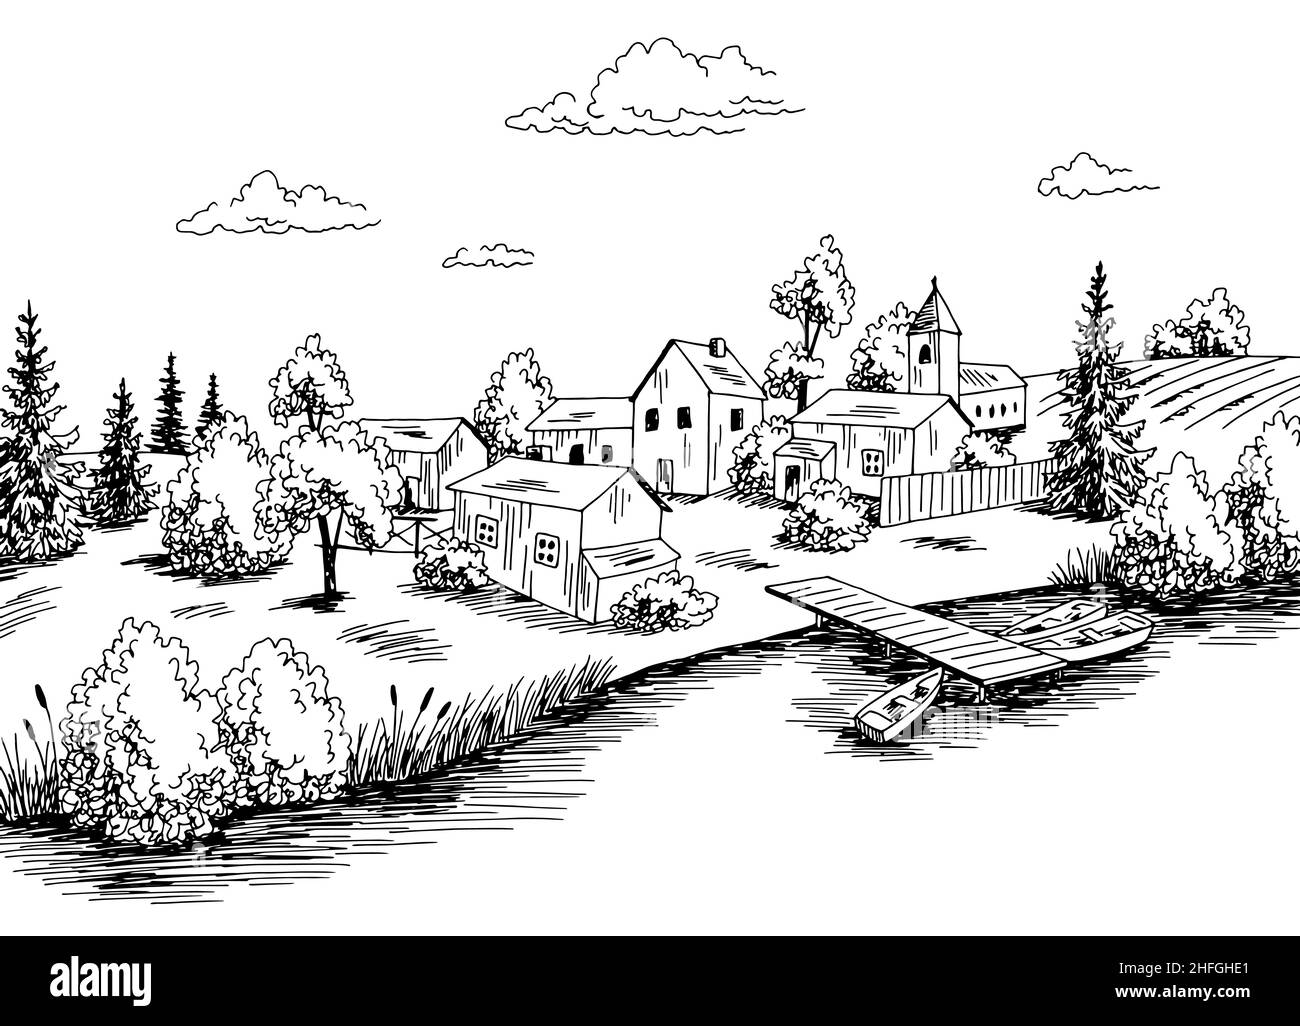 Village rivière graphique noir blanc paysage rural esquisse illustration vecteur Illustration de Vecteur